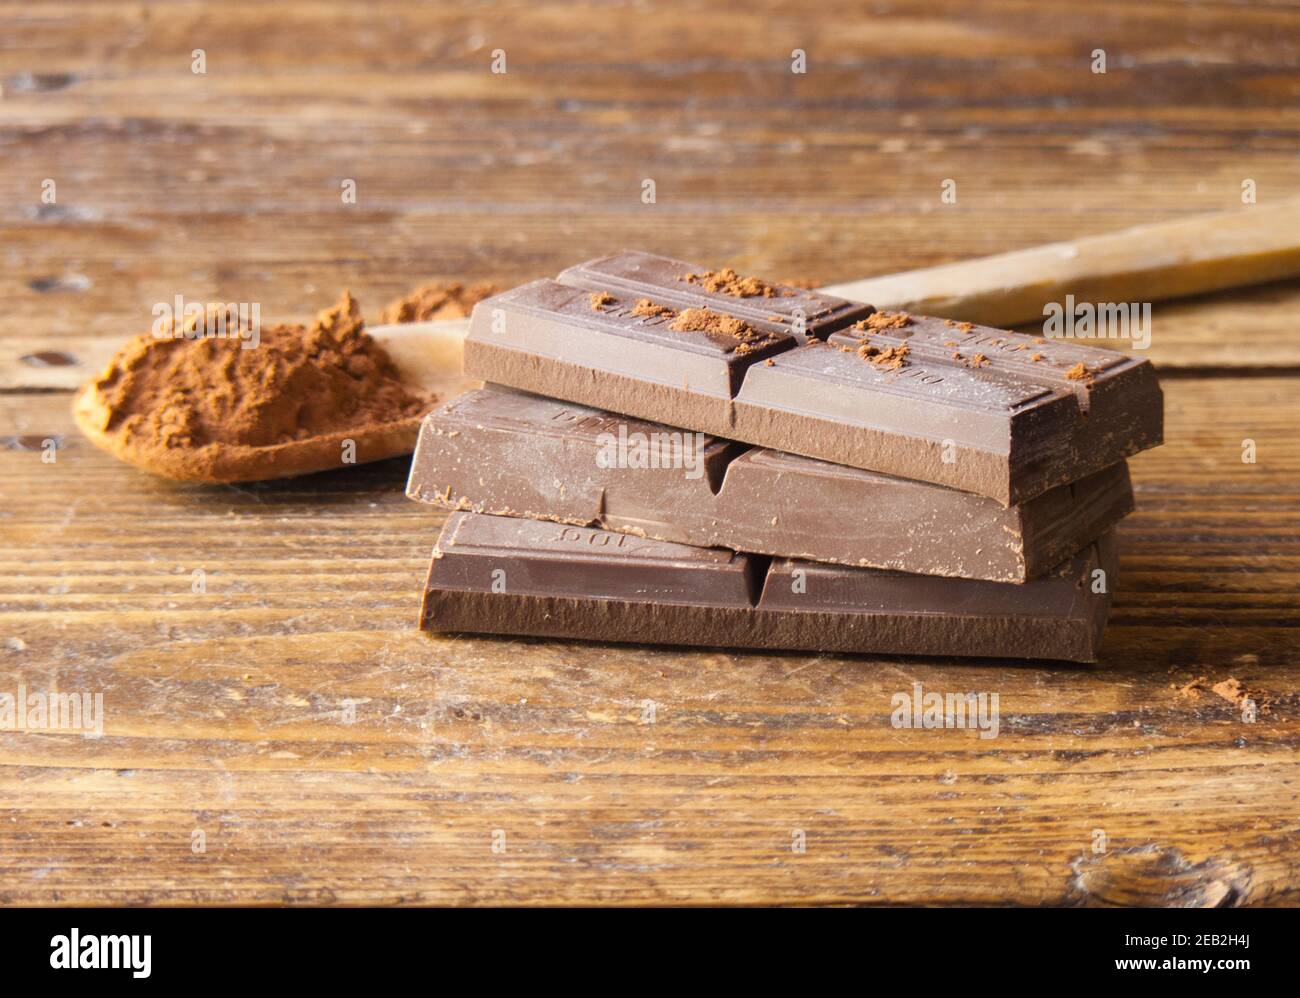 Dunkle Schokolade auf einem alten Holzhintergrund, Gourmet-Essen Stockfoto